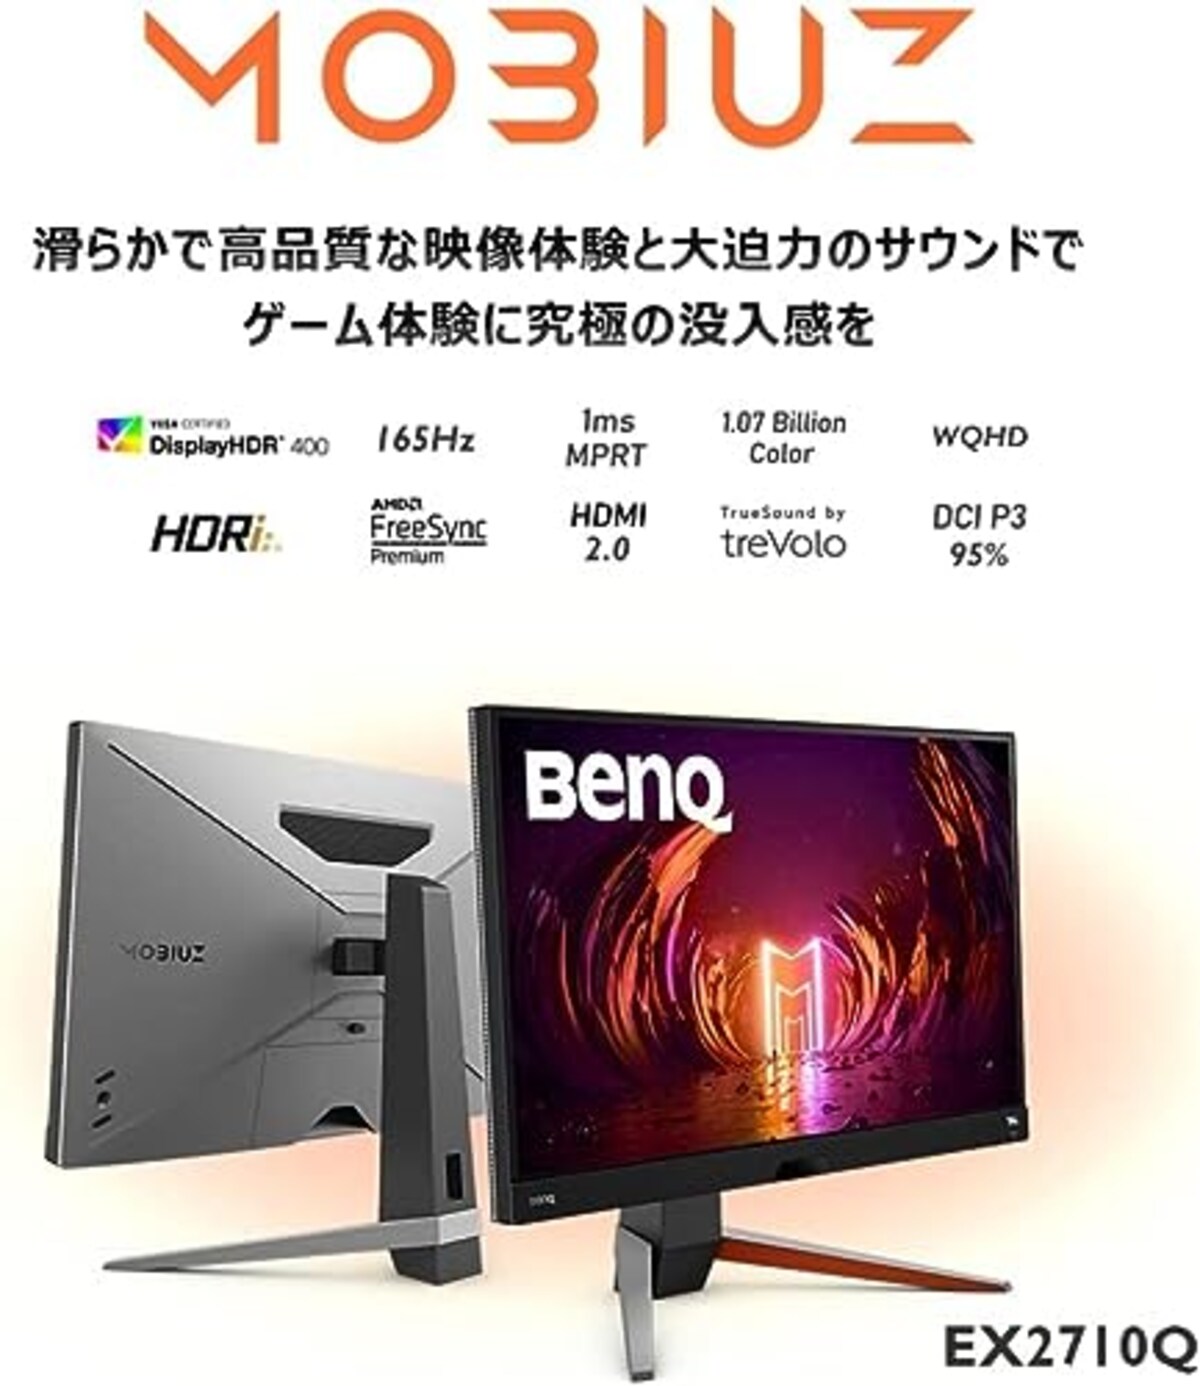  ベンキュージャパン BenQ MOBIUZ EX2710Q ゲーミングモニター (27インチ/165Hz/IPS/WQHD/1ms/HDRi/HDR400/FreeSync Premium 2.1ch treVoloスピーカー/高機能スタンド/ゲームモード(FPS/RPG/レーシング)画像2 